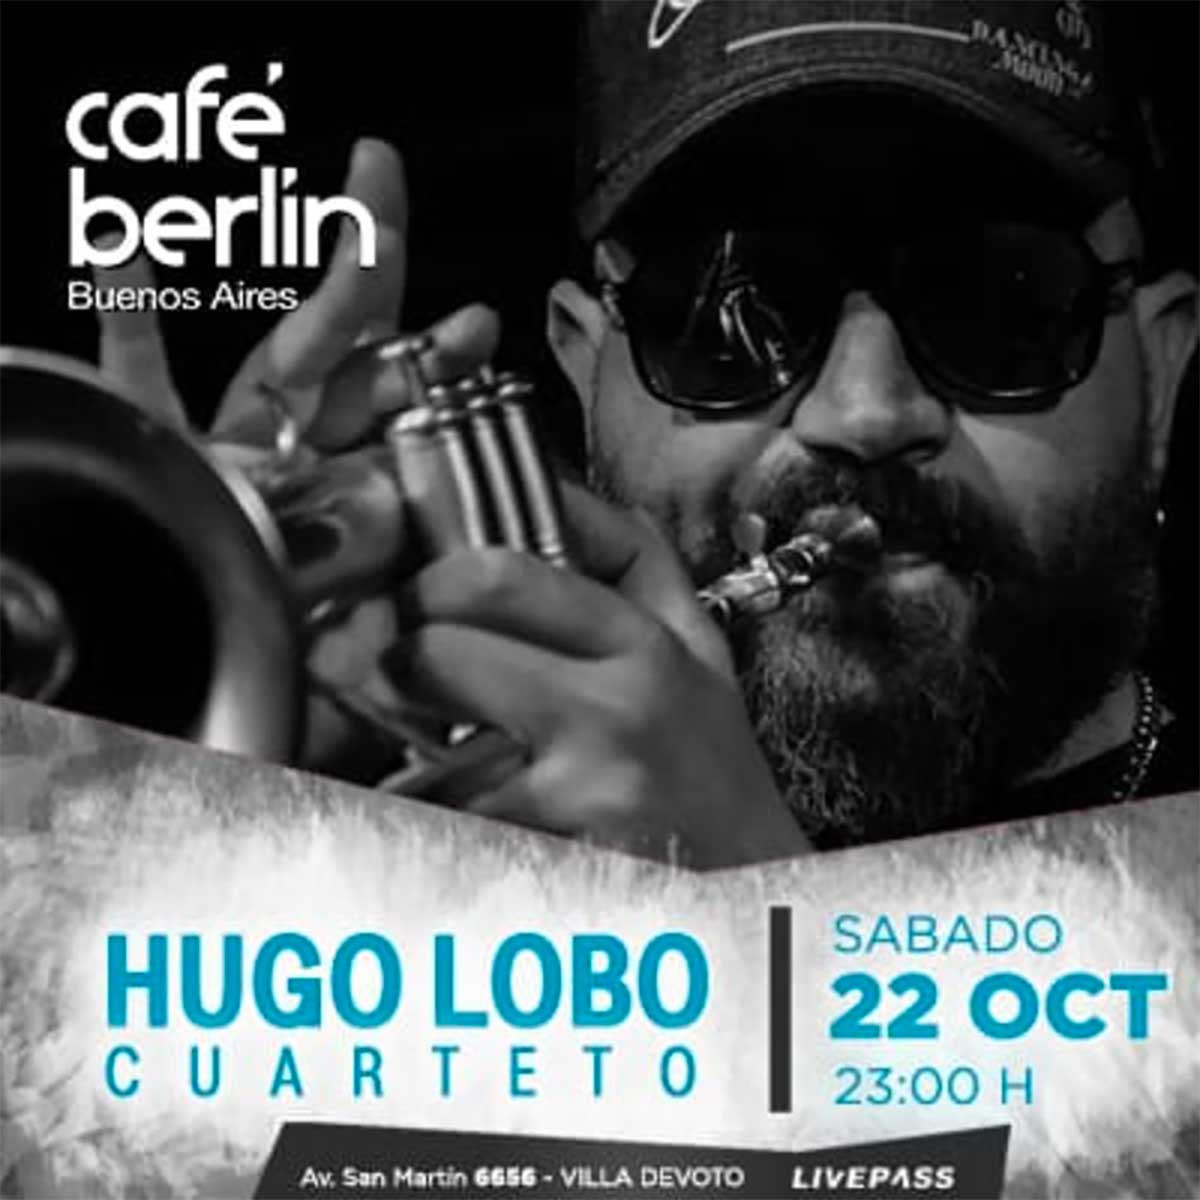 Hugo Lobo Cuarteto se presentará en Café Berlín